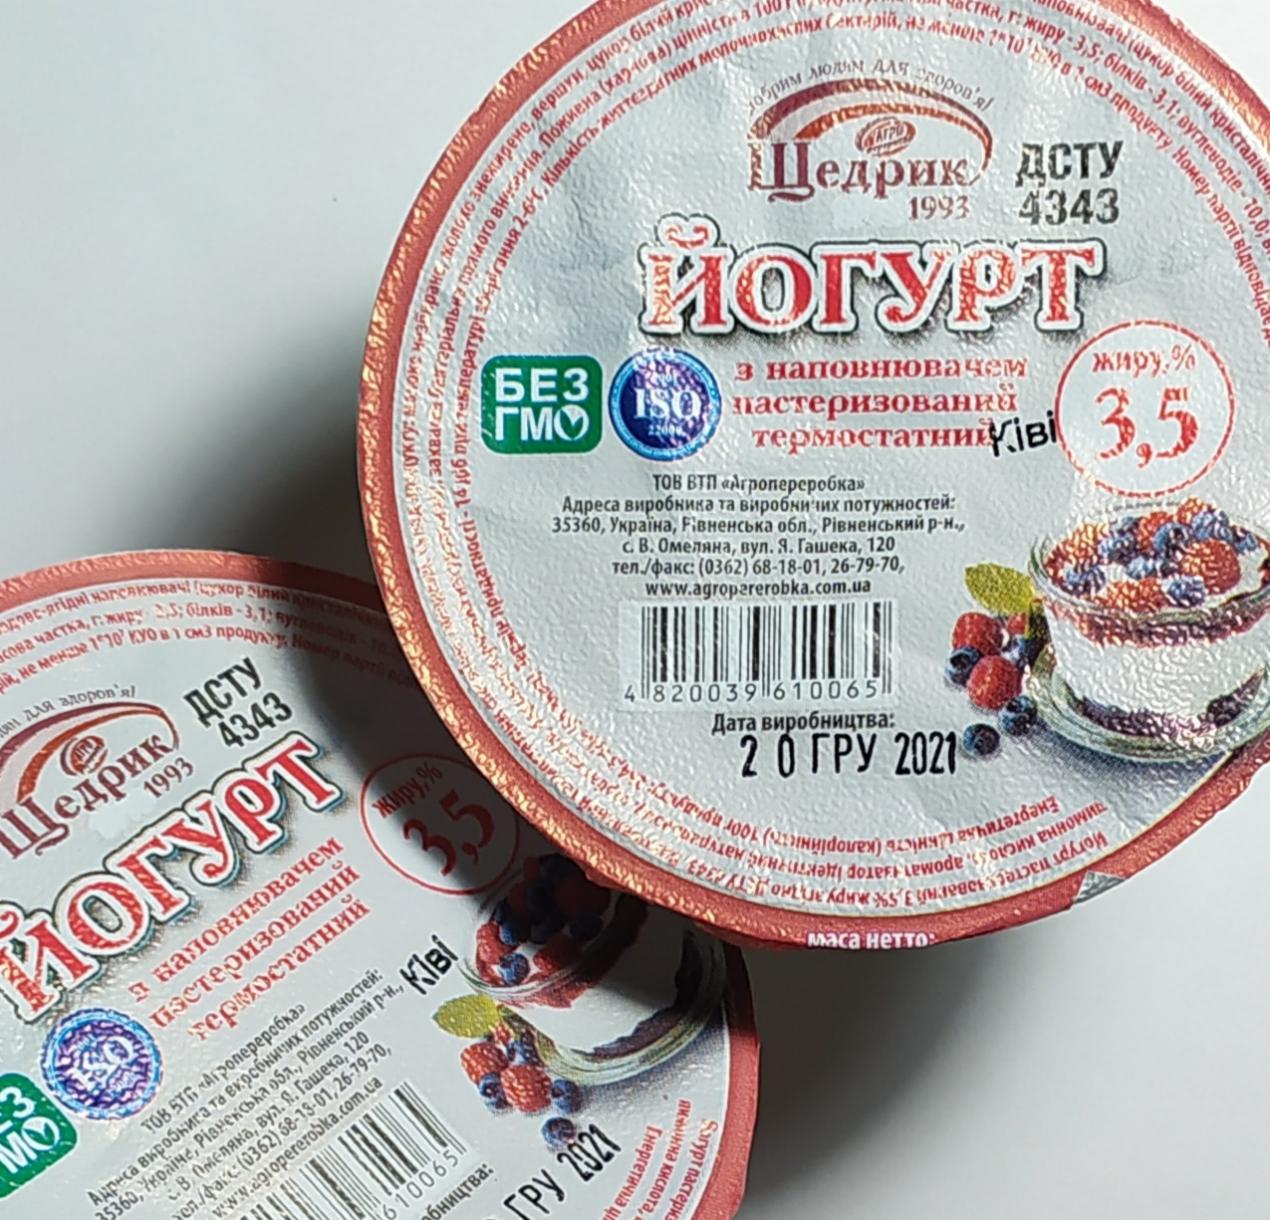 Фото - Йогурт с наполнителем киви 3.5% термостатный Щедрик